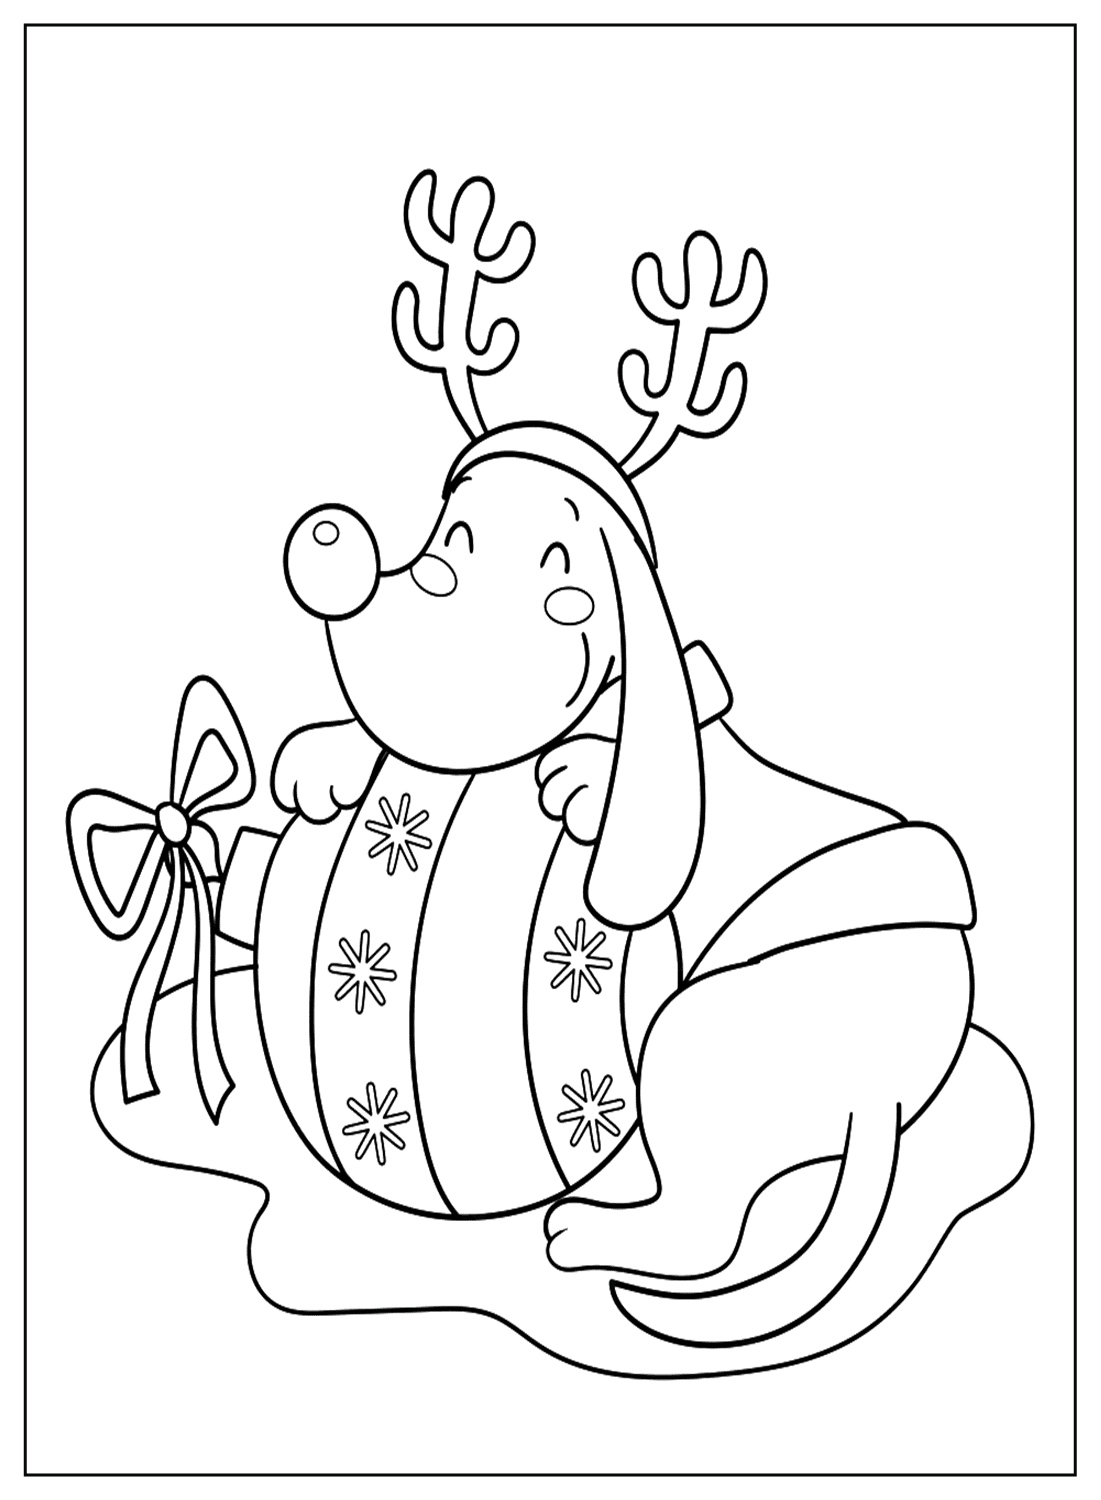 Simpatiche pagine da colorare di Rudolph di Rudolph